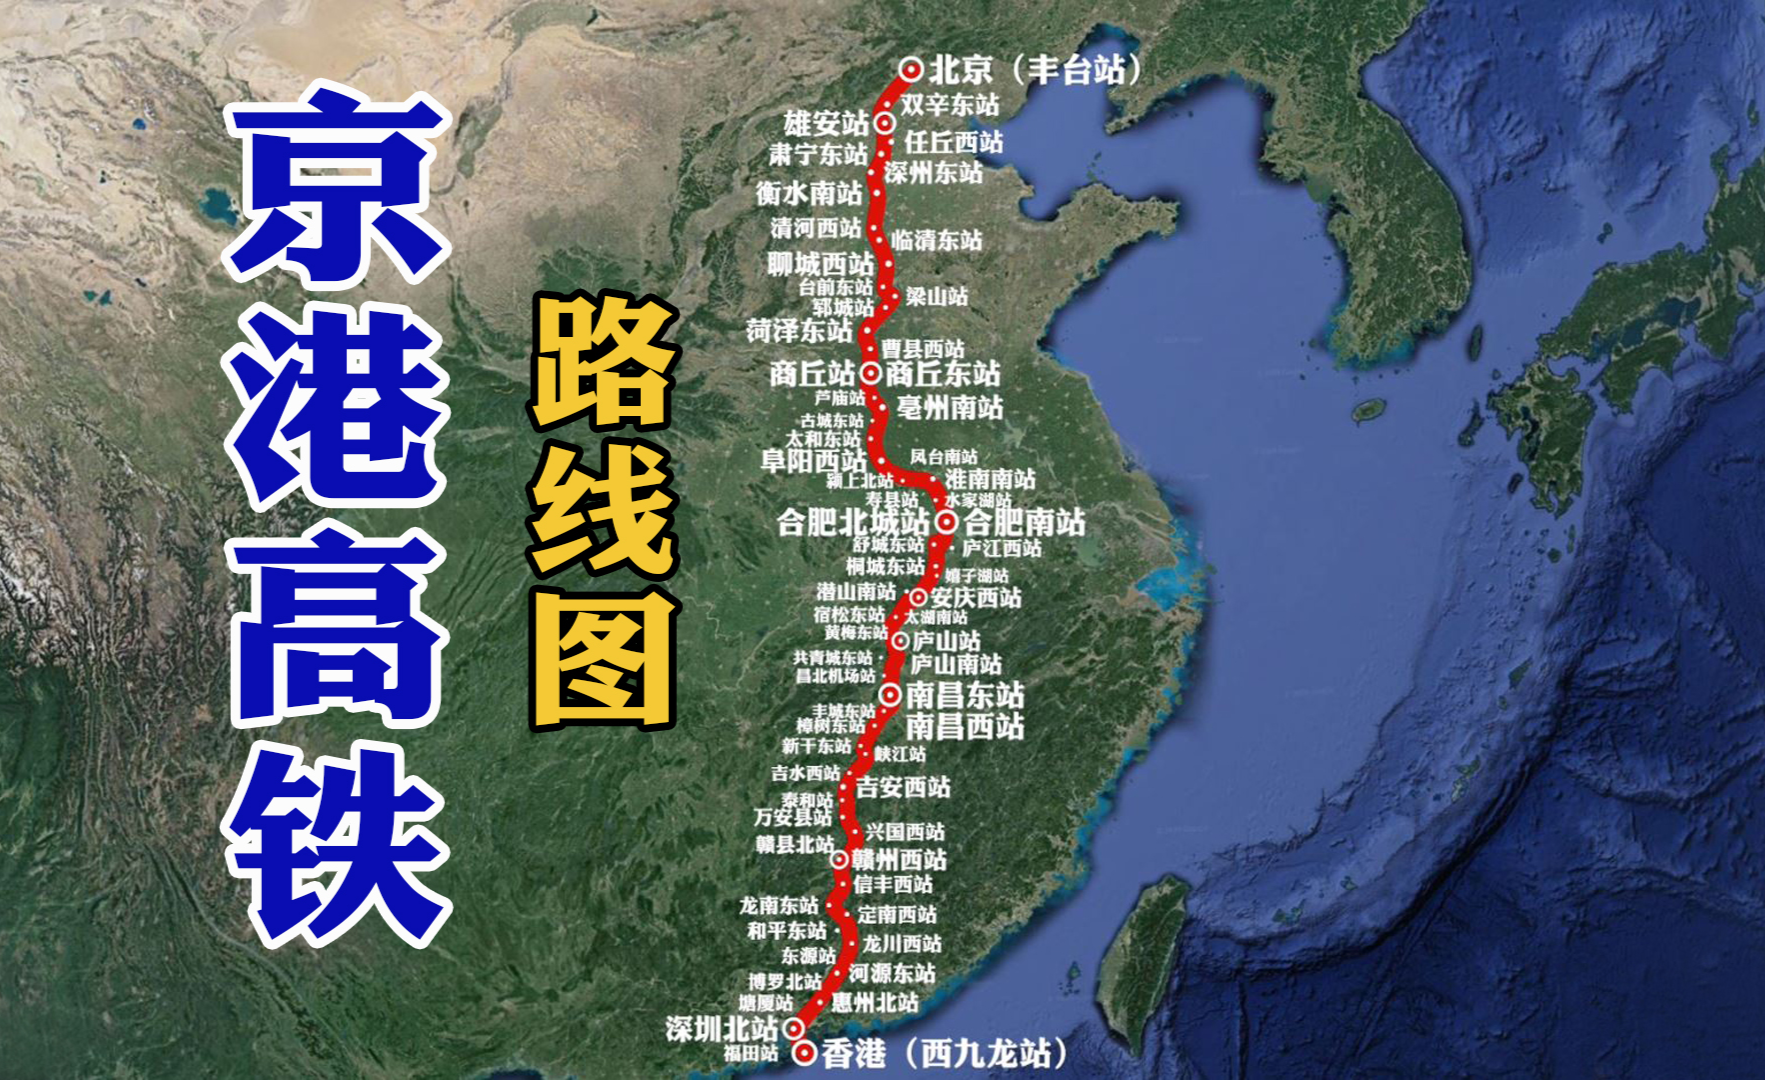 6月1日起上海南站恢复办客 列车班次有序增加_新华报业网